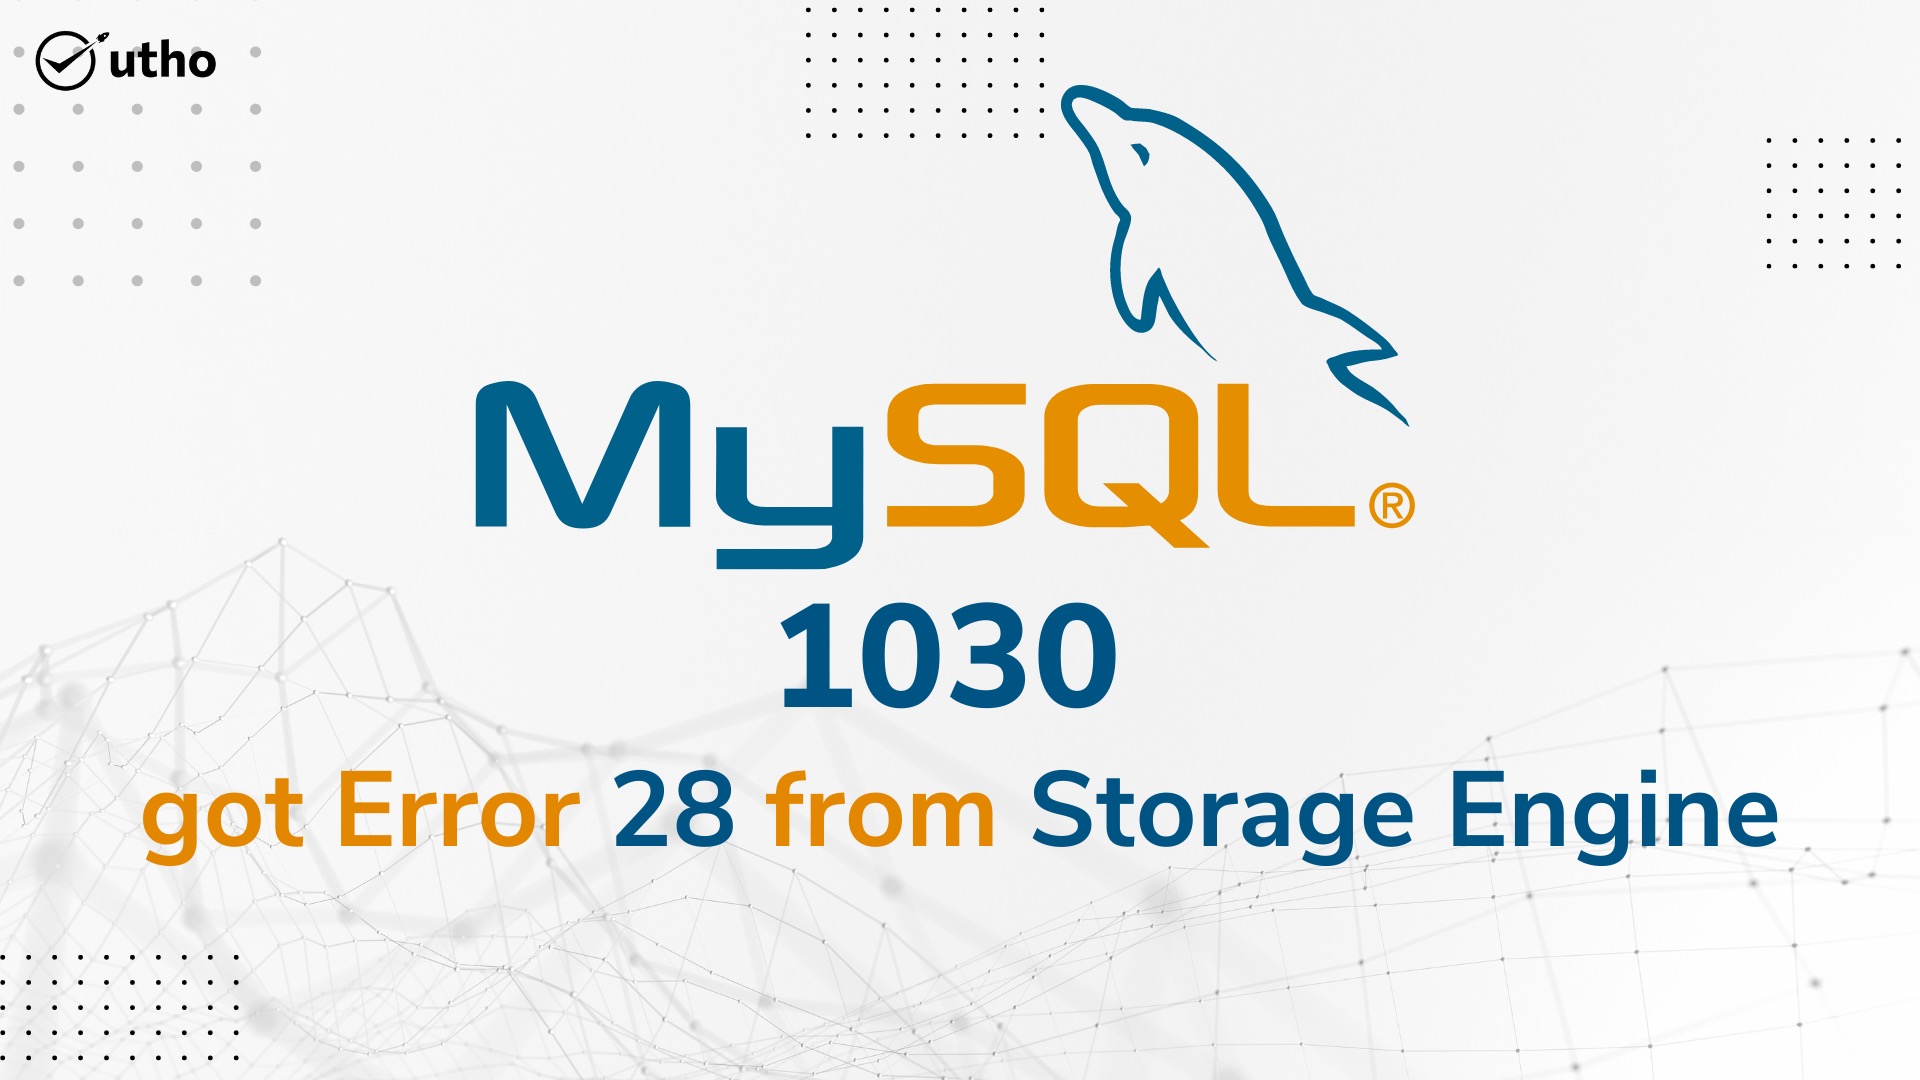 Mysql 1030 got error 28 from storage engine